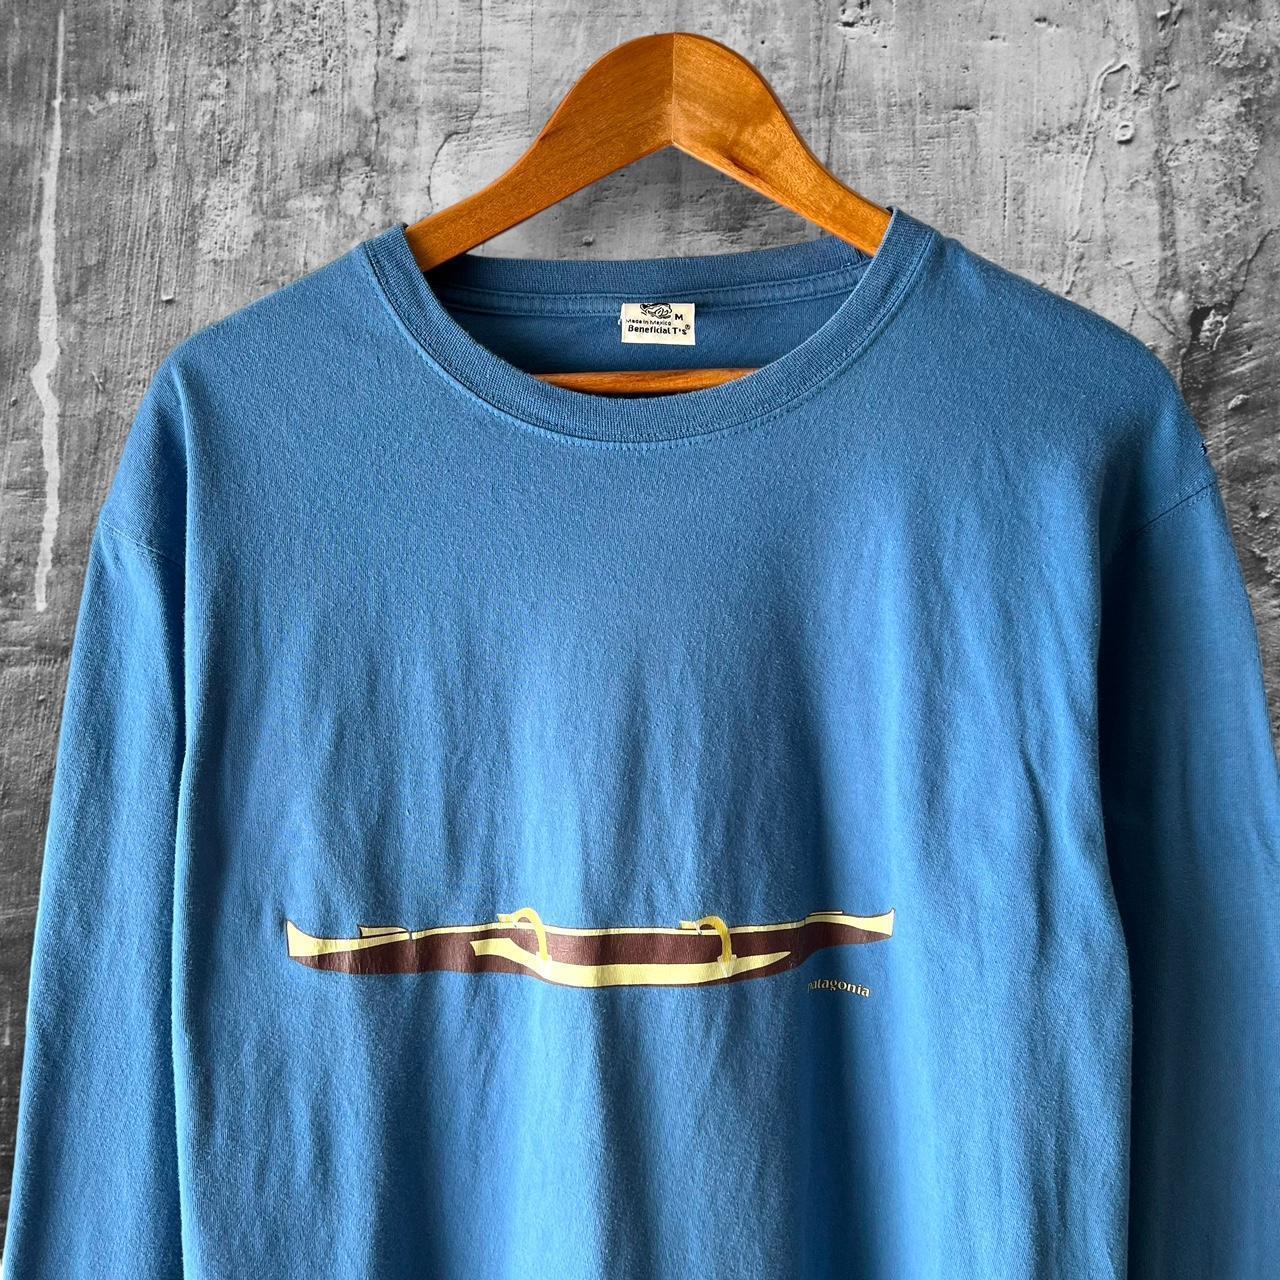 Mens size medium Vintage Patagonia Long-sleeve... - Depop